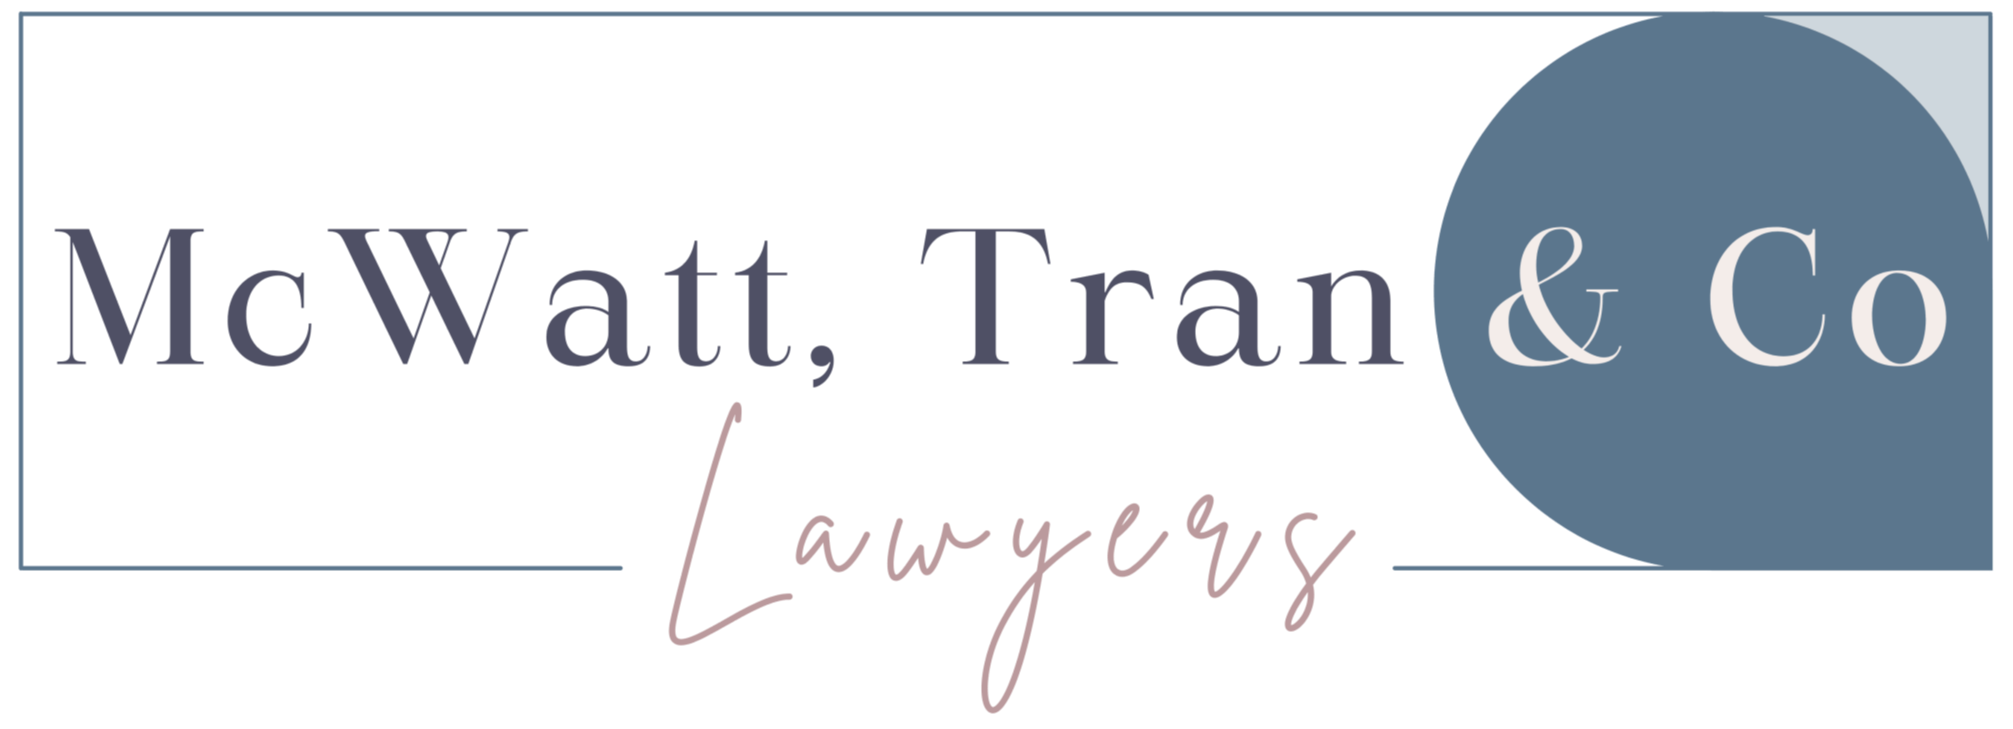 McWatt Tran & Co | Lawyers